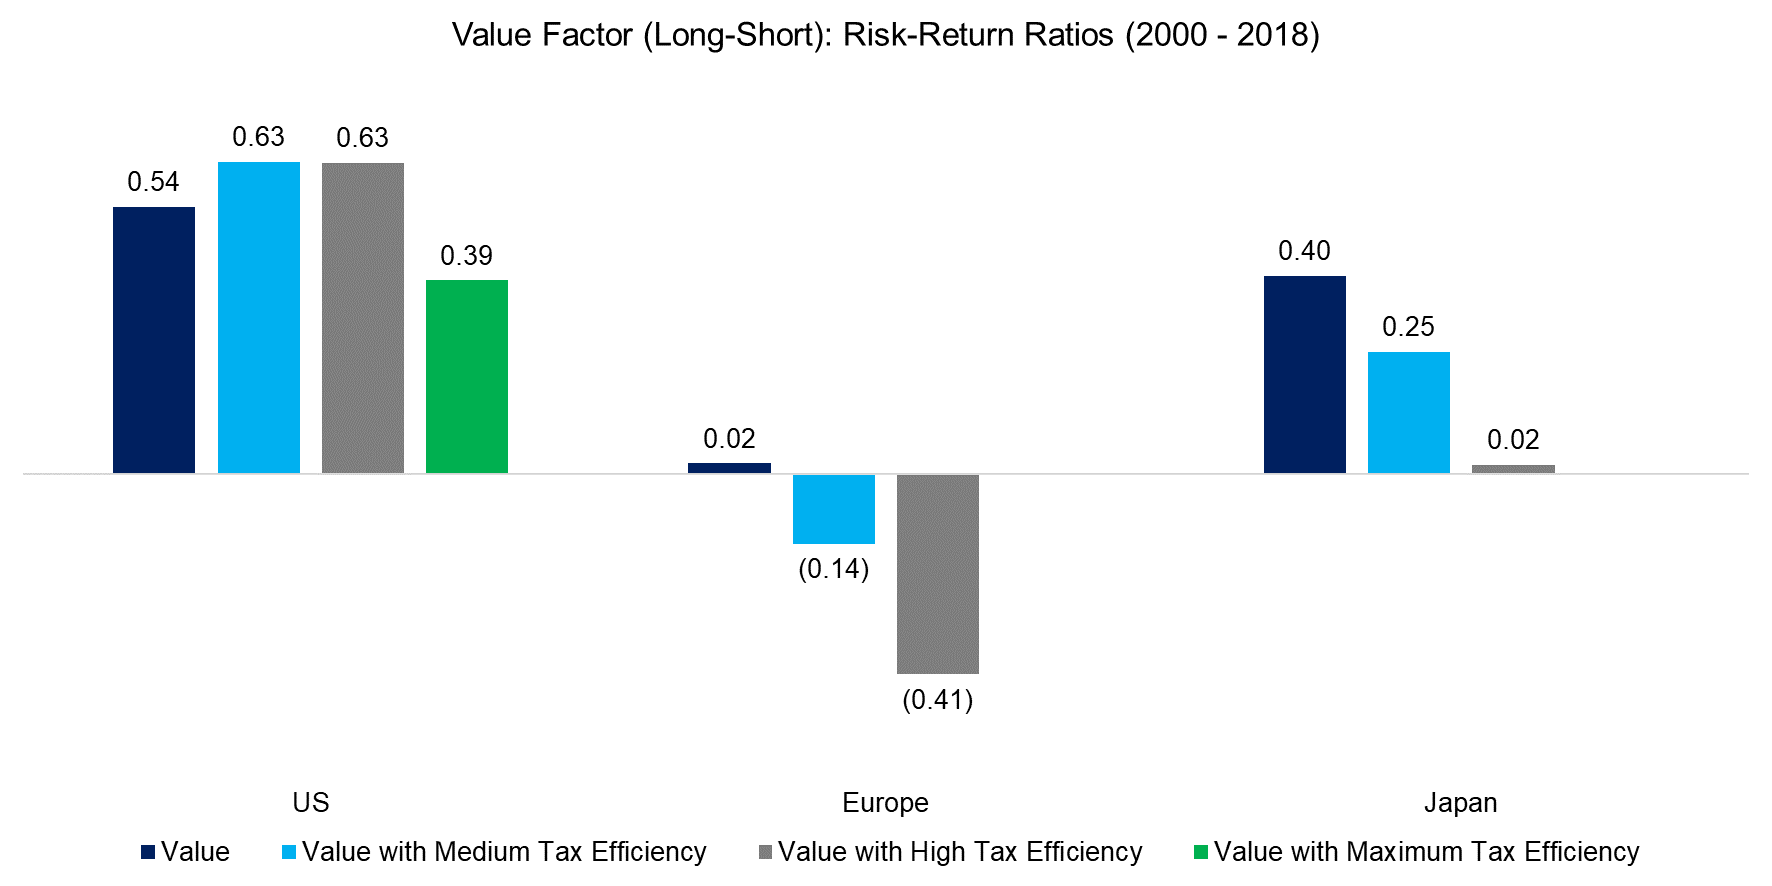 Value Factor (Long-Short) Risk-Return Ratios (2000 - 2018)